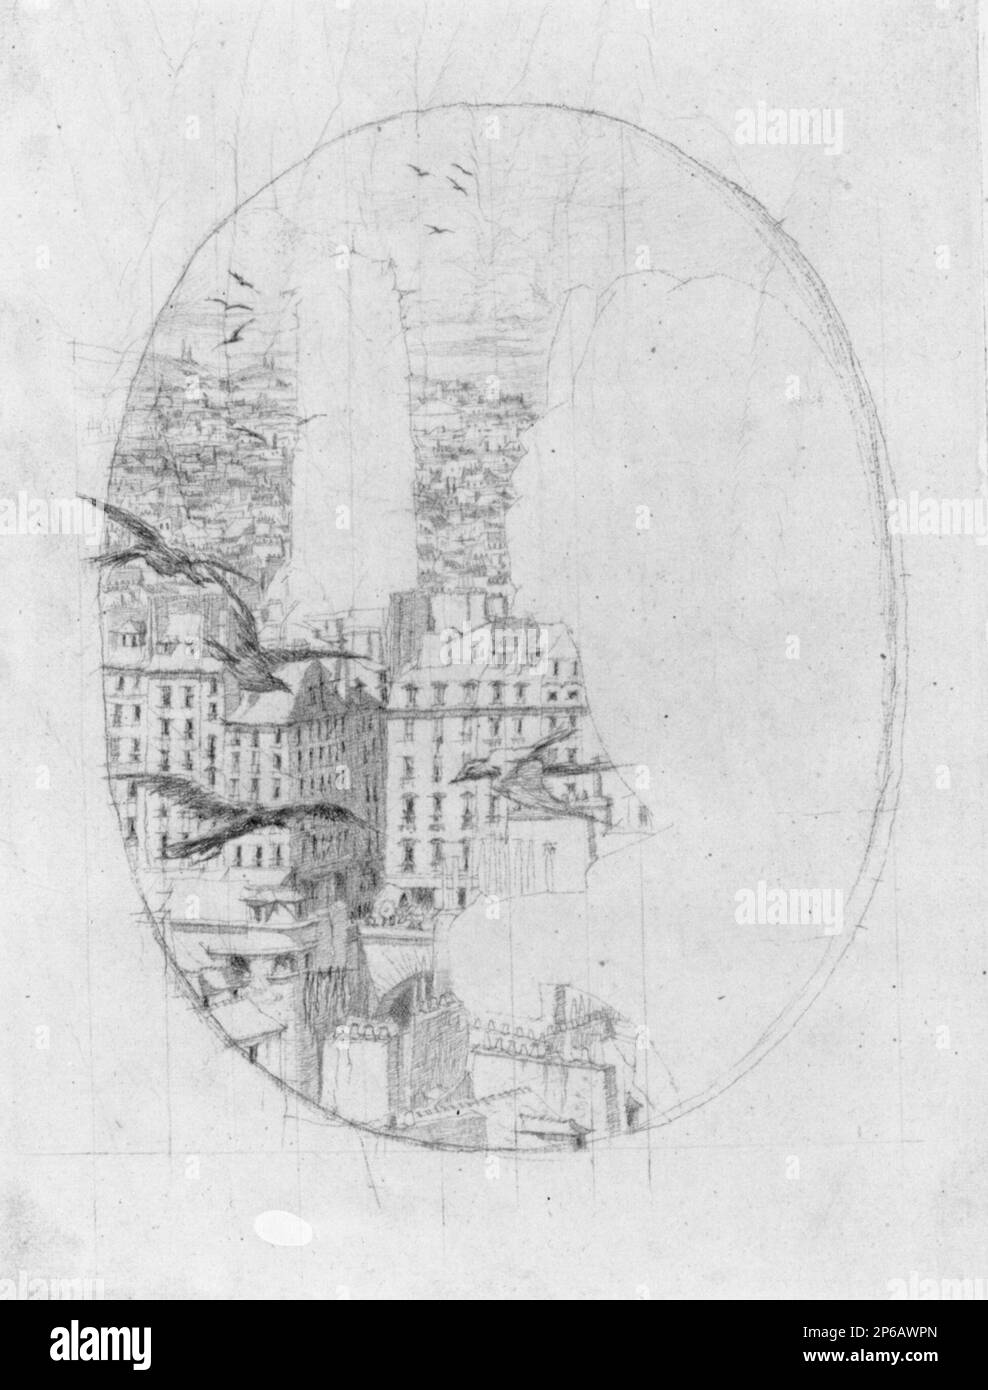 Charles Meryon, Studium für "Le Stryge": Die Stadt und die Vögel, vor 1853, Bleistift auf Papier. Stockfoto